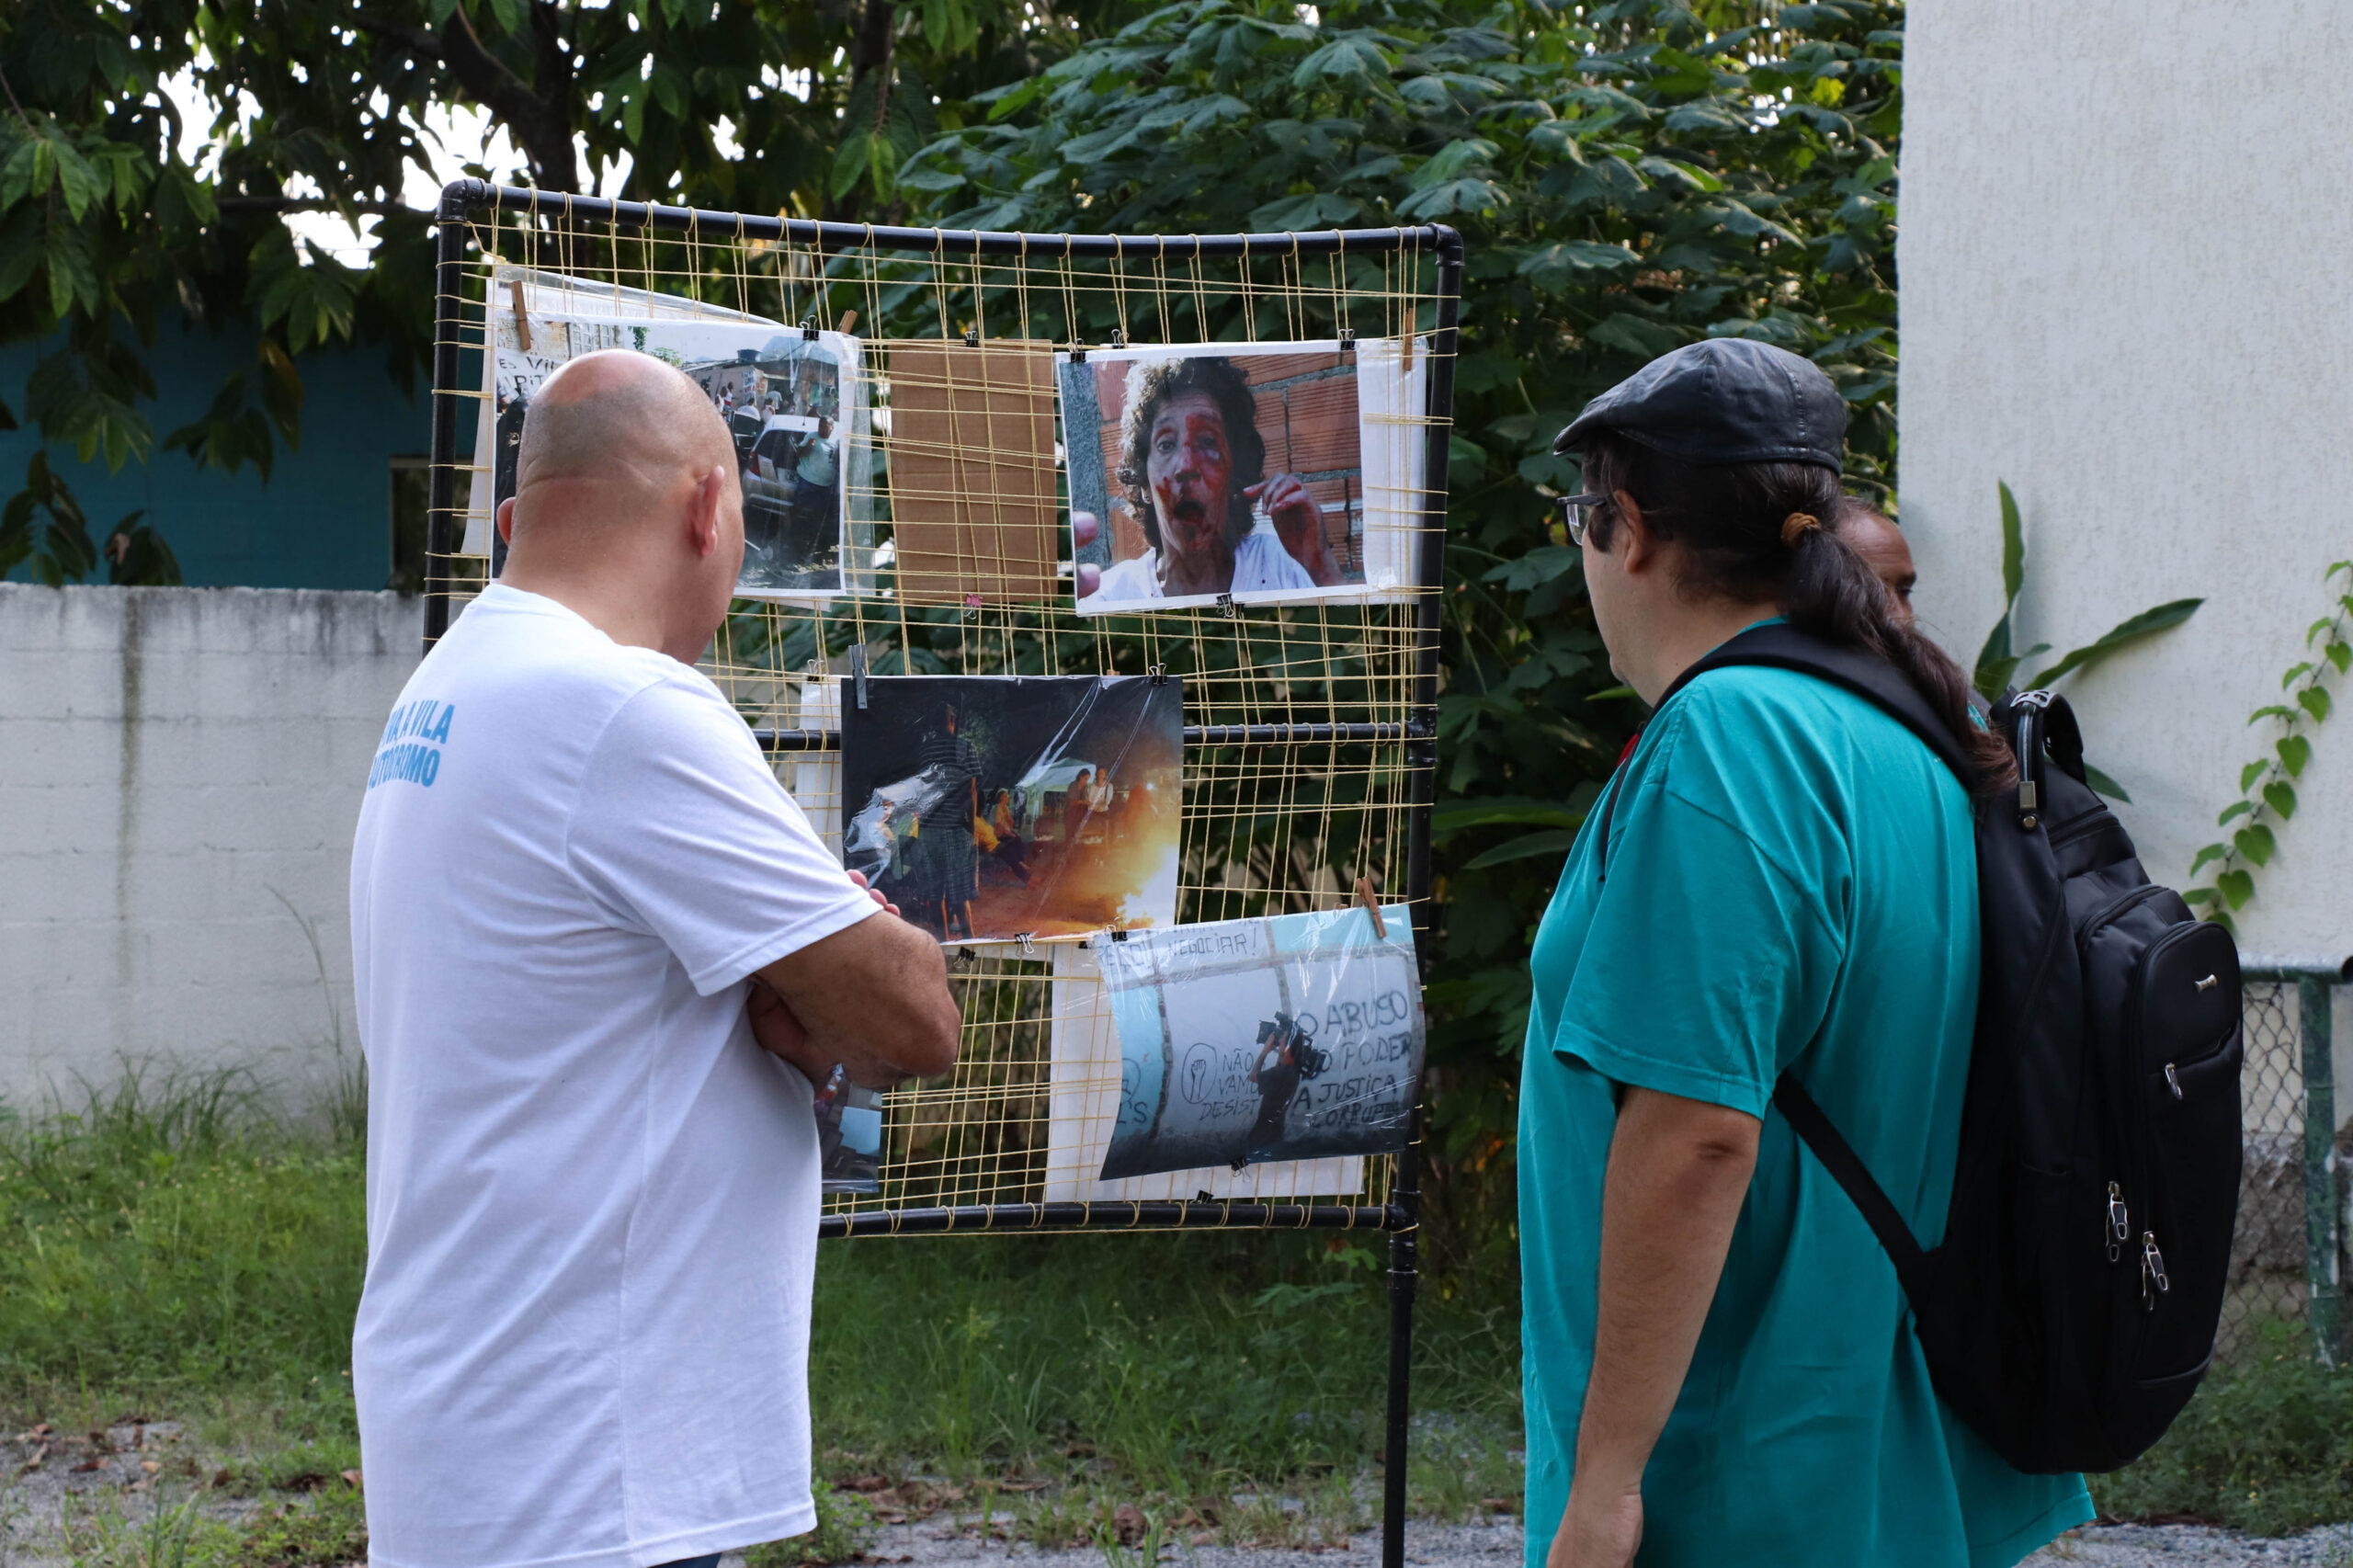 Visitantes, entre eles o vereador Tarcísio Motta, observam fotos do processo violento de remoção da Vila Autódromo coladas em um suporte em formato de rede no Museu das Remoções. Foto: Alexandre Cerqueira